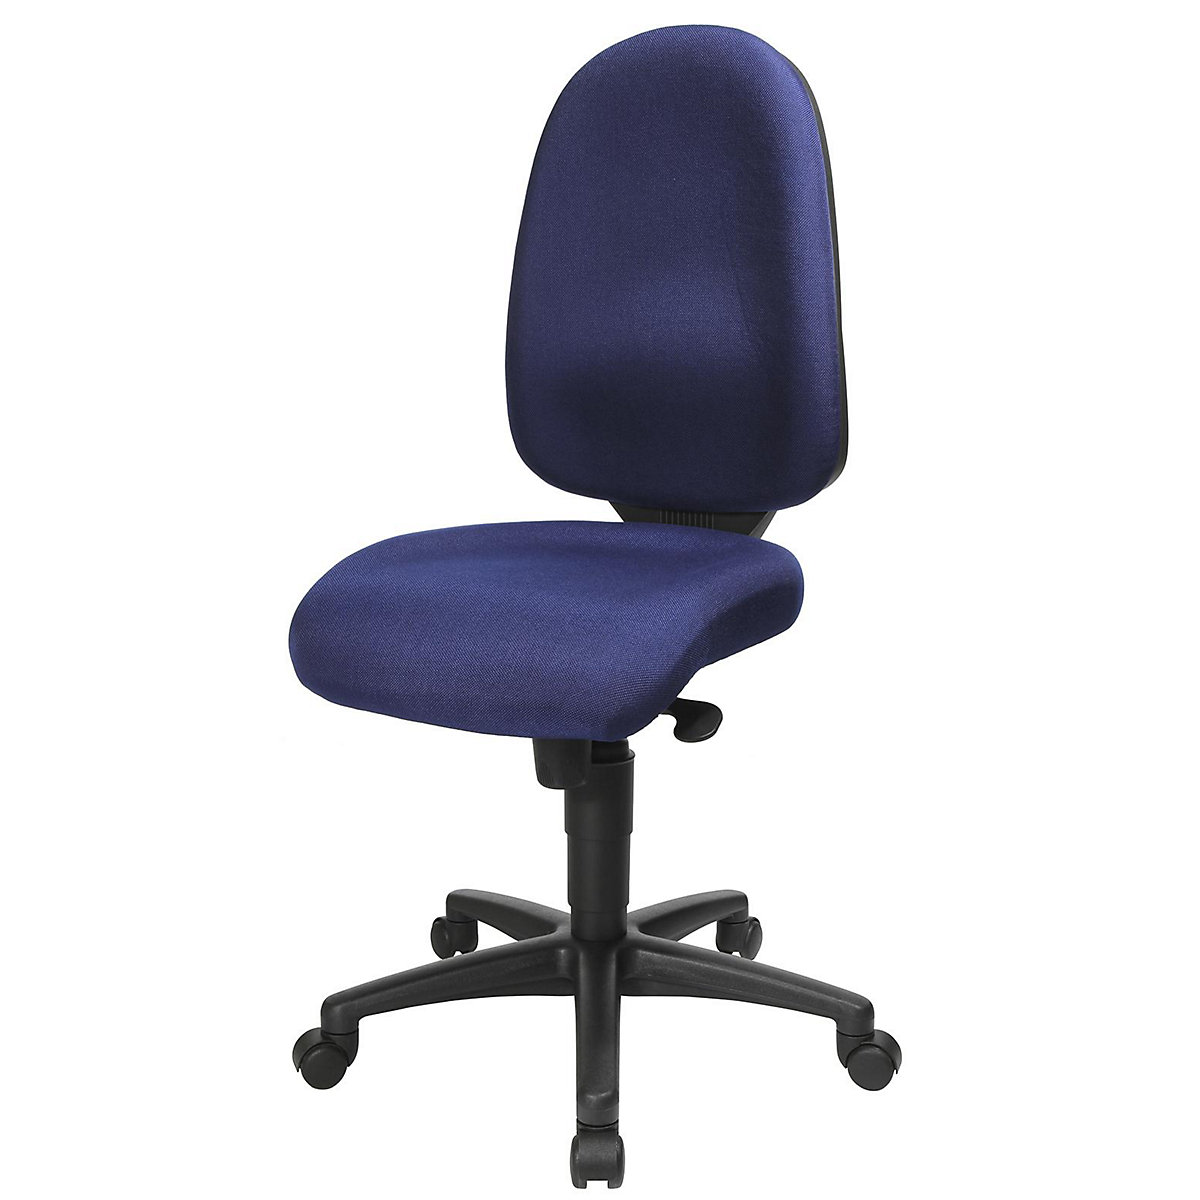 Otočná židle pro meziobratlové ploténky, synchronní mechanika, sedák pro meziobratlové ploténky – Topstar, výška opěradla 550 mm, potah modrý royal-16